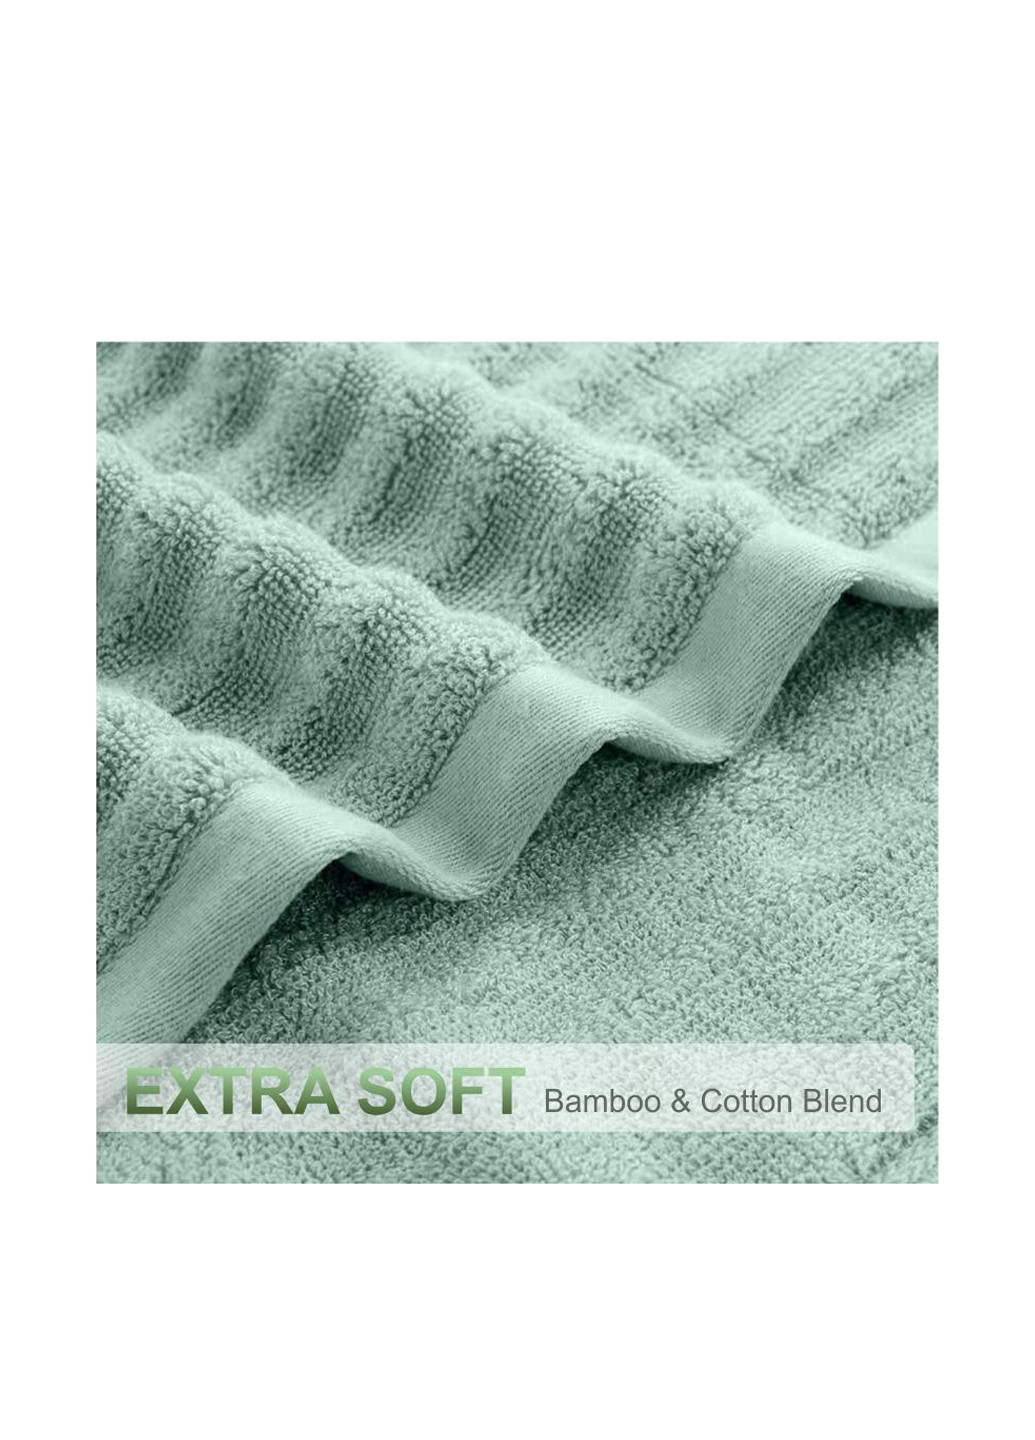 Lovely Svi полотенце (3 шт.), 70х140 см, 34х72 см, 33х33 см однотонный светло-зеленый производство - Китай